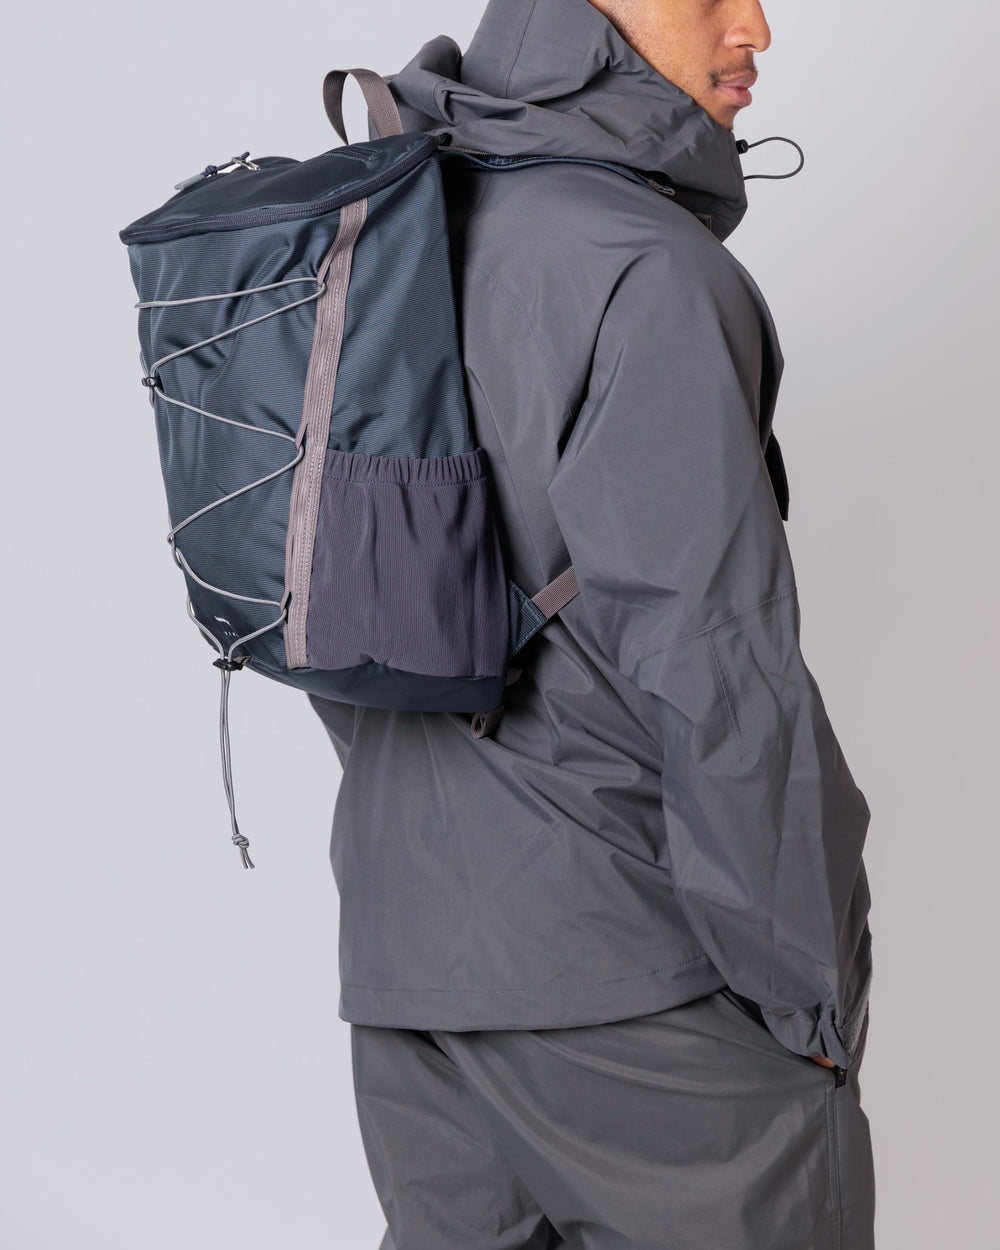 Creek Hike Backpack - Multi Steel Blue/Navy - Frontiers Woman